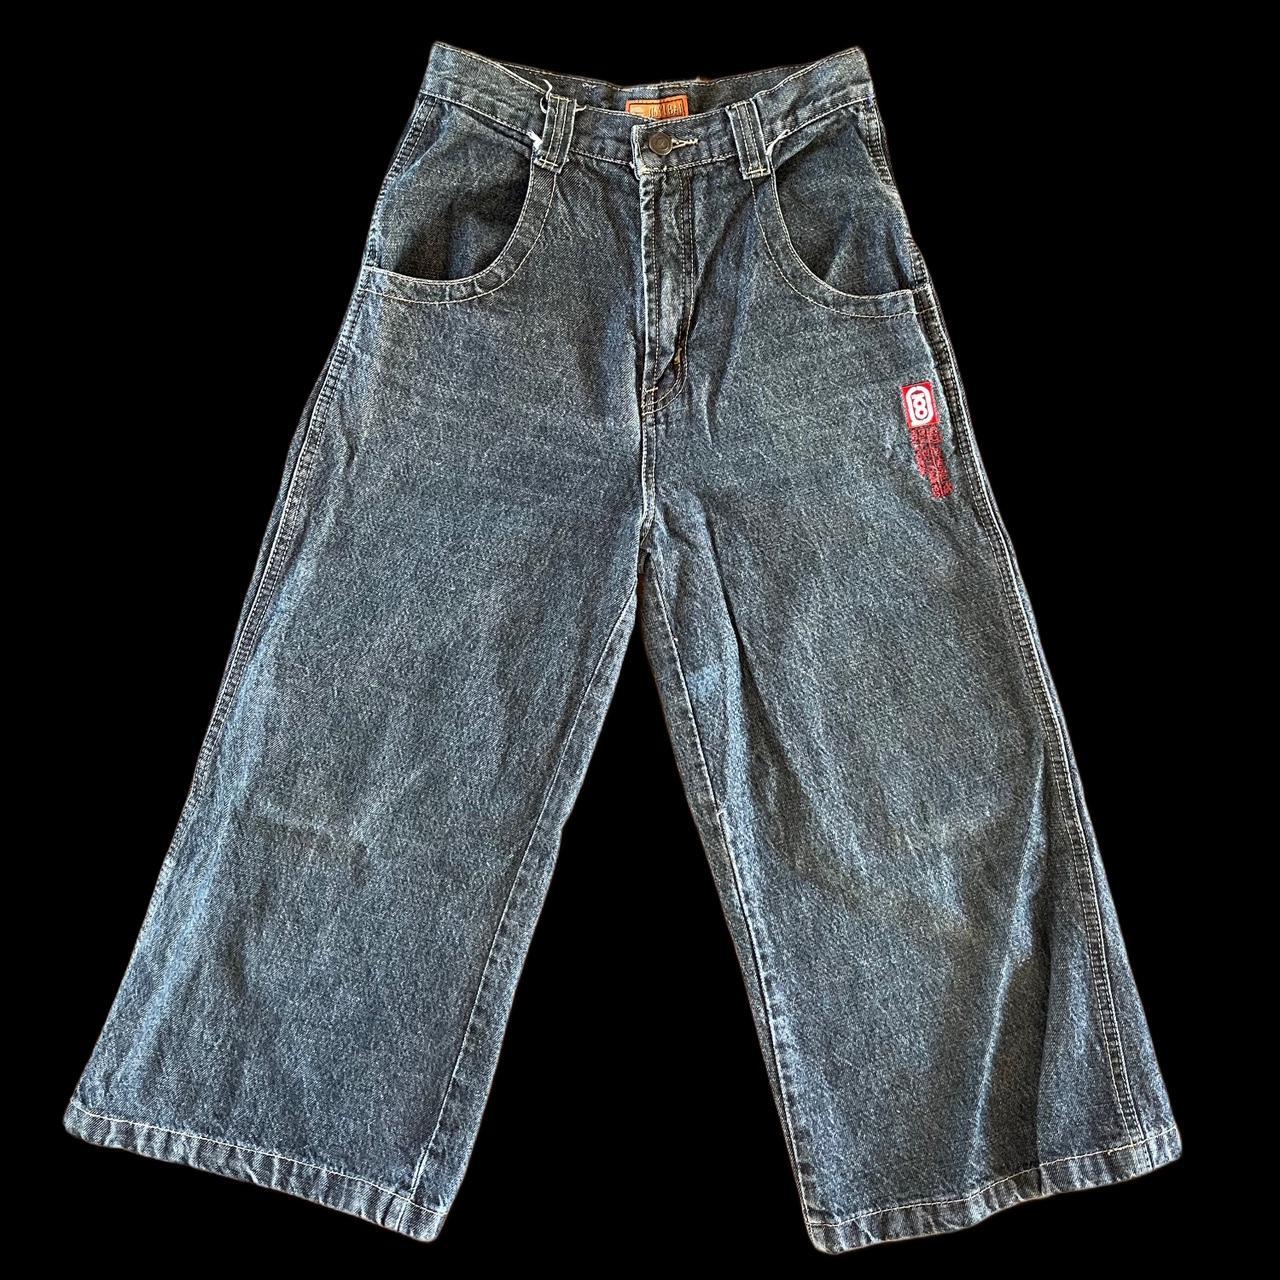 jort style jeans size:unknown... - Depop